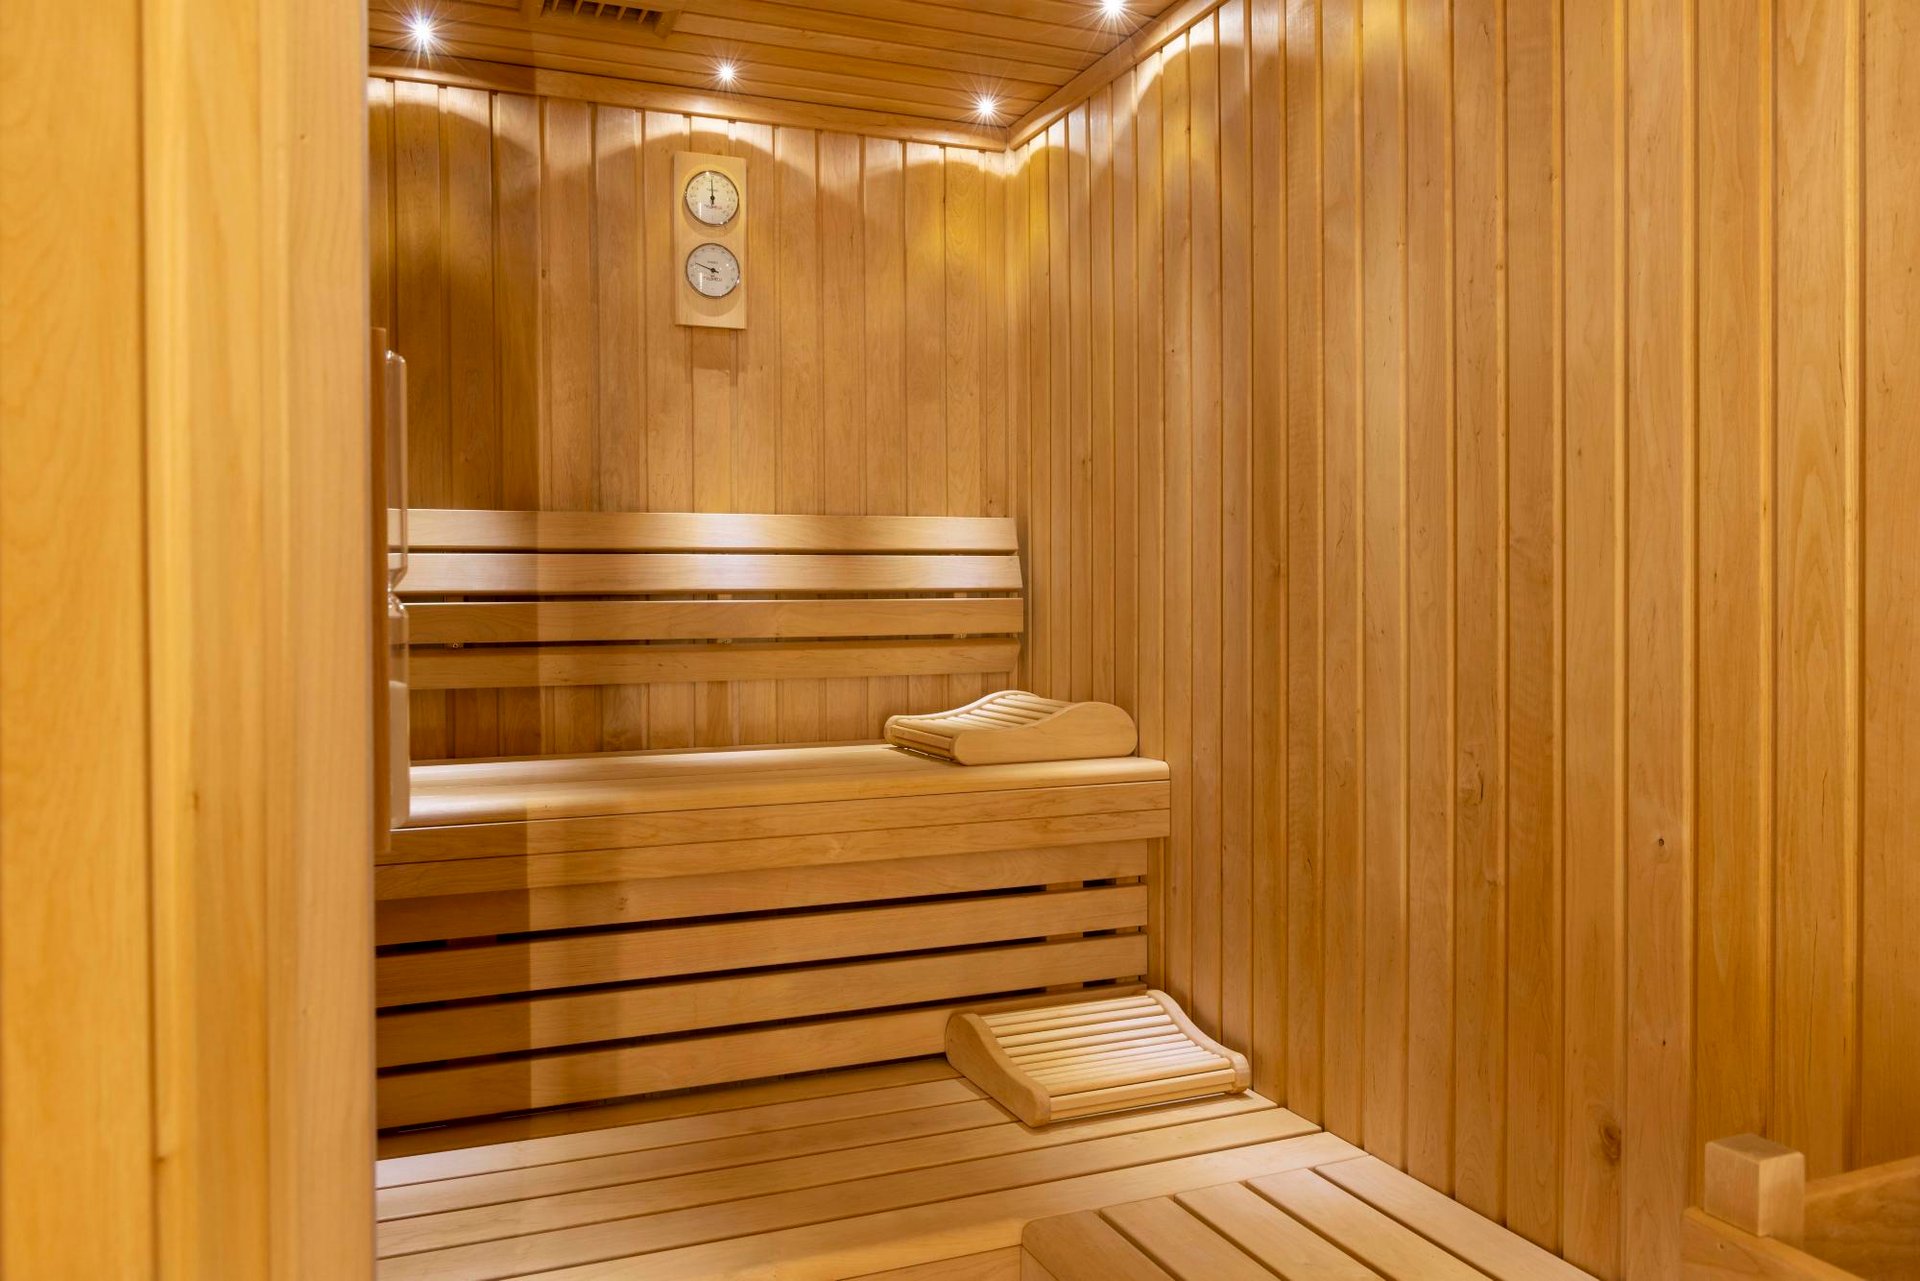 Hôtel Le 12 | Hôtel sauna privatif Paris